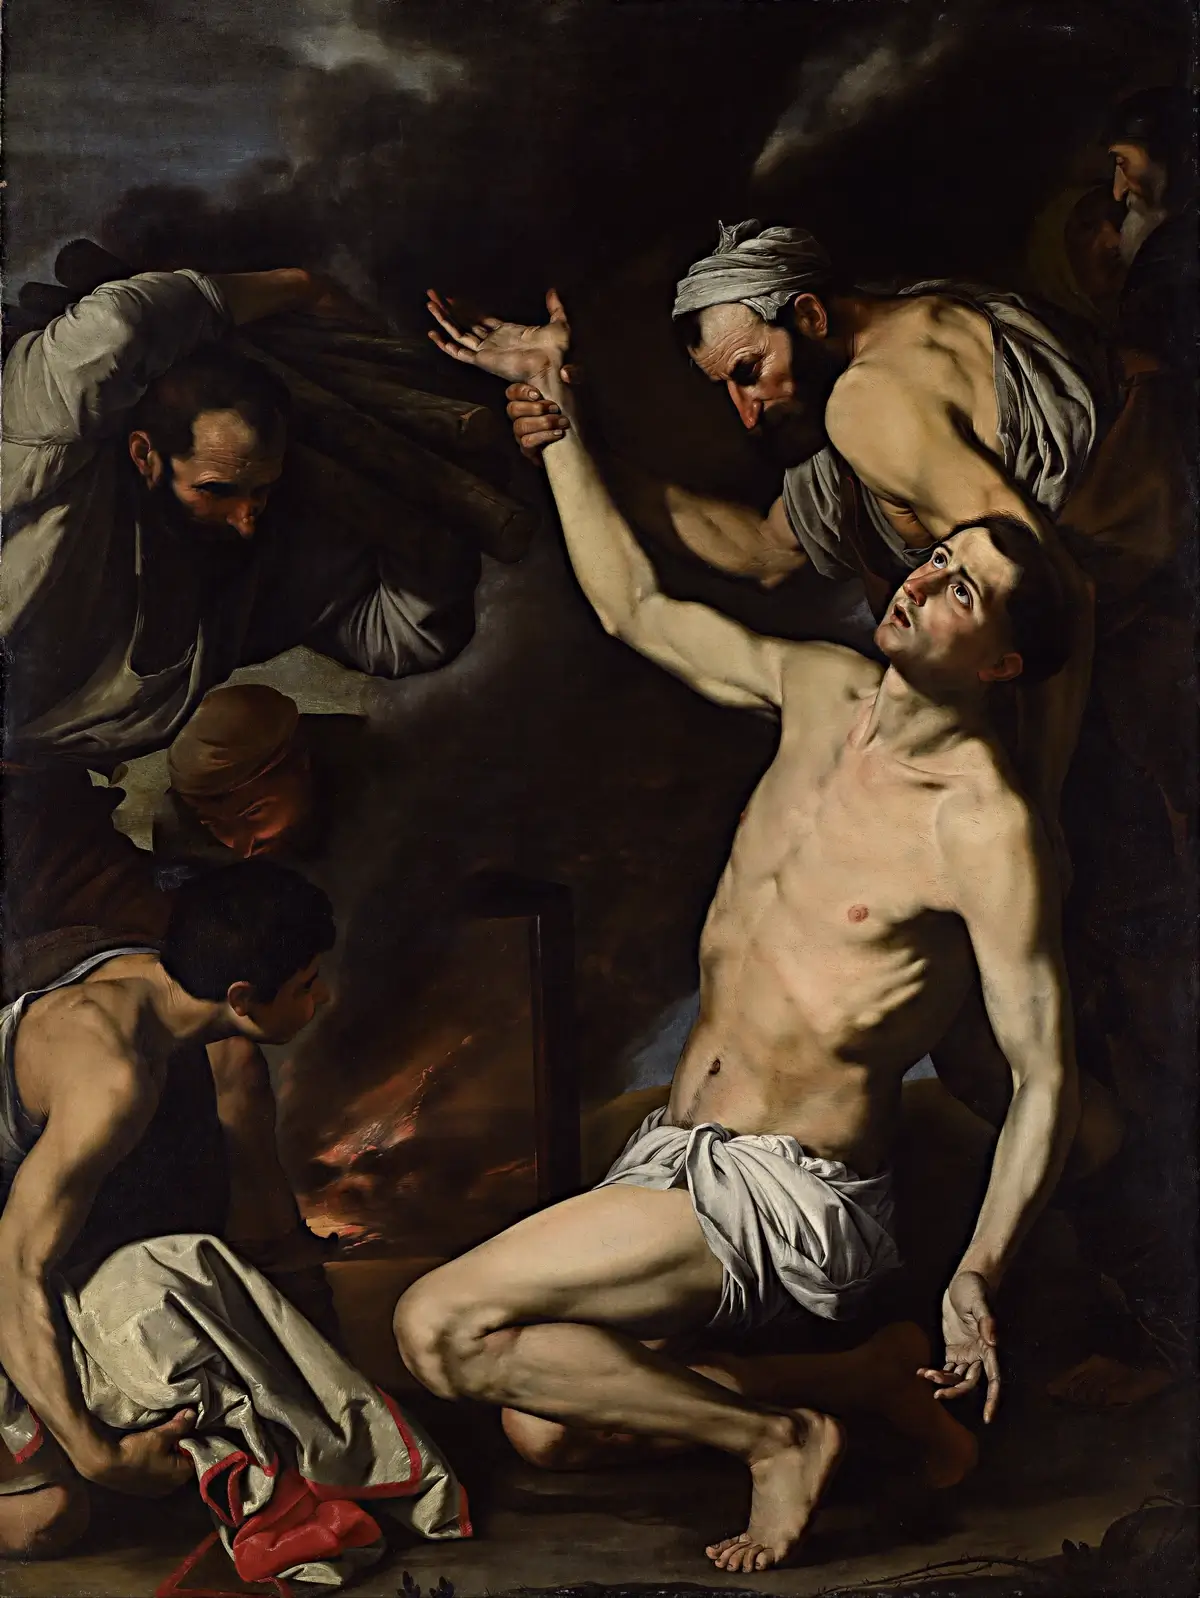 José de Ribera, "Martyrdom of Saint Lawrence", between 1620 and 1624